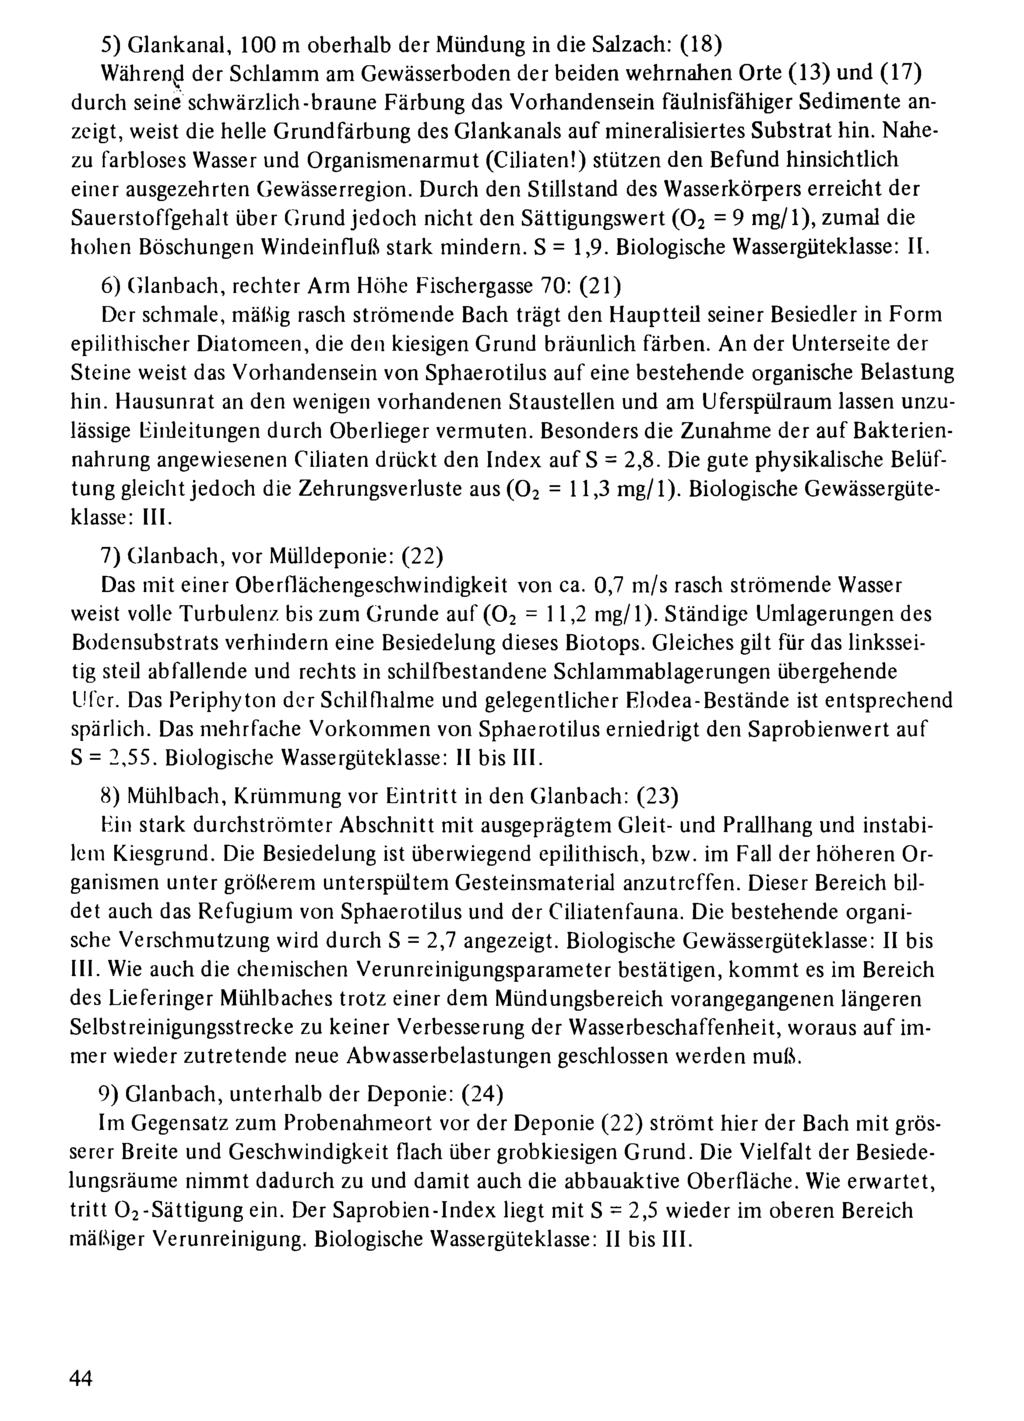 5) Glankanal, Naturwissenschaftlich-Medizinischen 100 m oerhal der Vereinigung Mündung in Salzurg; in die download Salzach: unter www.iologiezentrum.